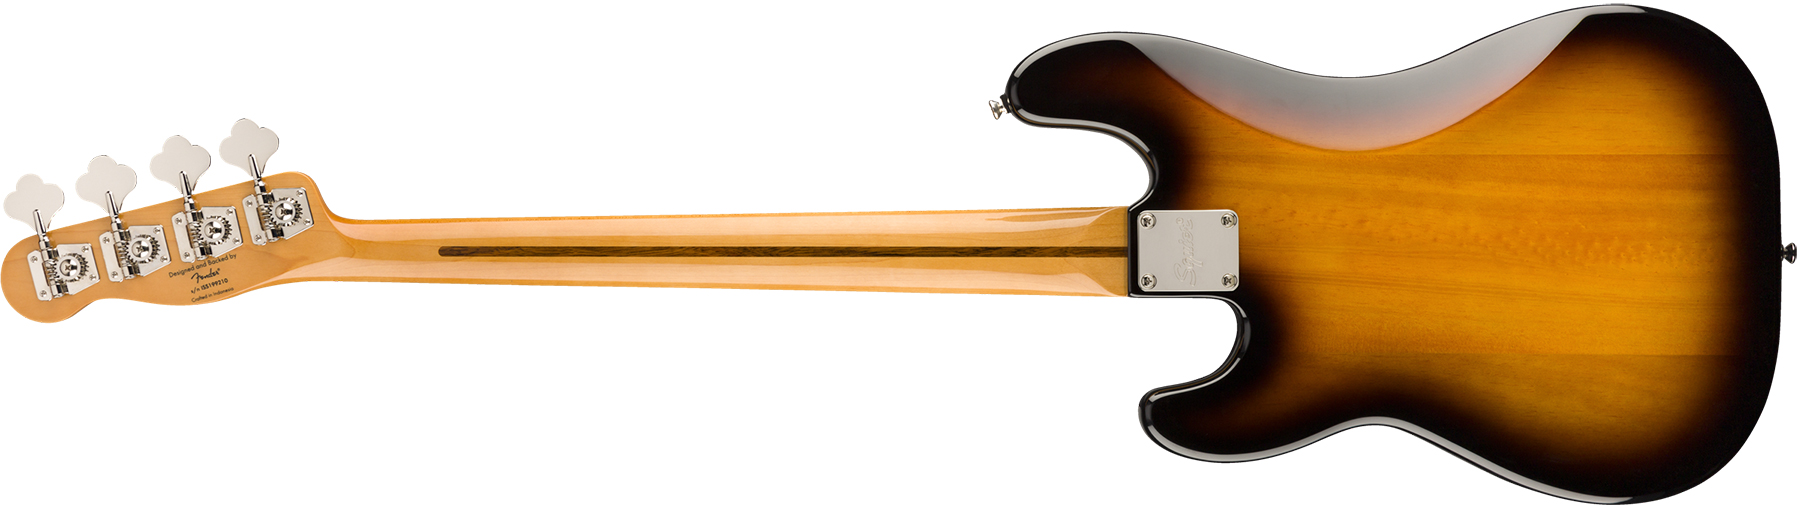 Squier Precision Bass '50s Classic Vibe 2019 Mn - 2-color Sunburst - Bajo eléctrico de cuerpo sólido - Variation 1